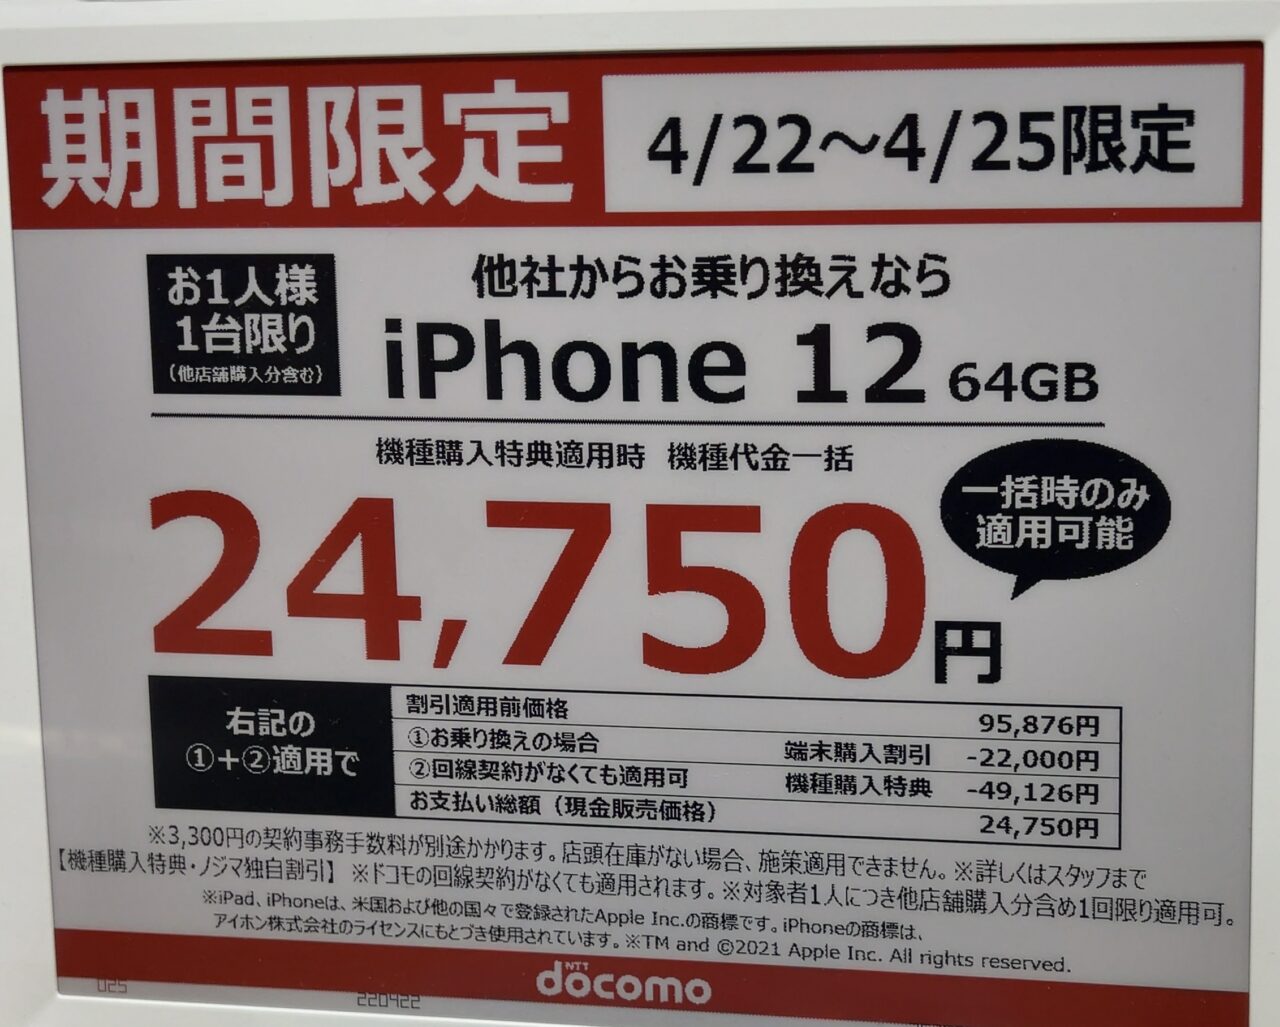 ノジマでもドコモのiPhone 12の64GBがMNPで一括24,750円、回線 